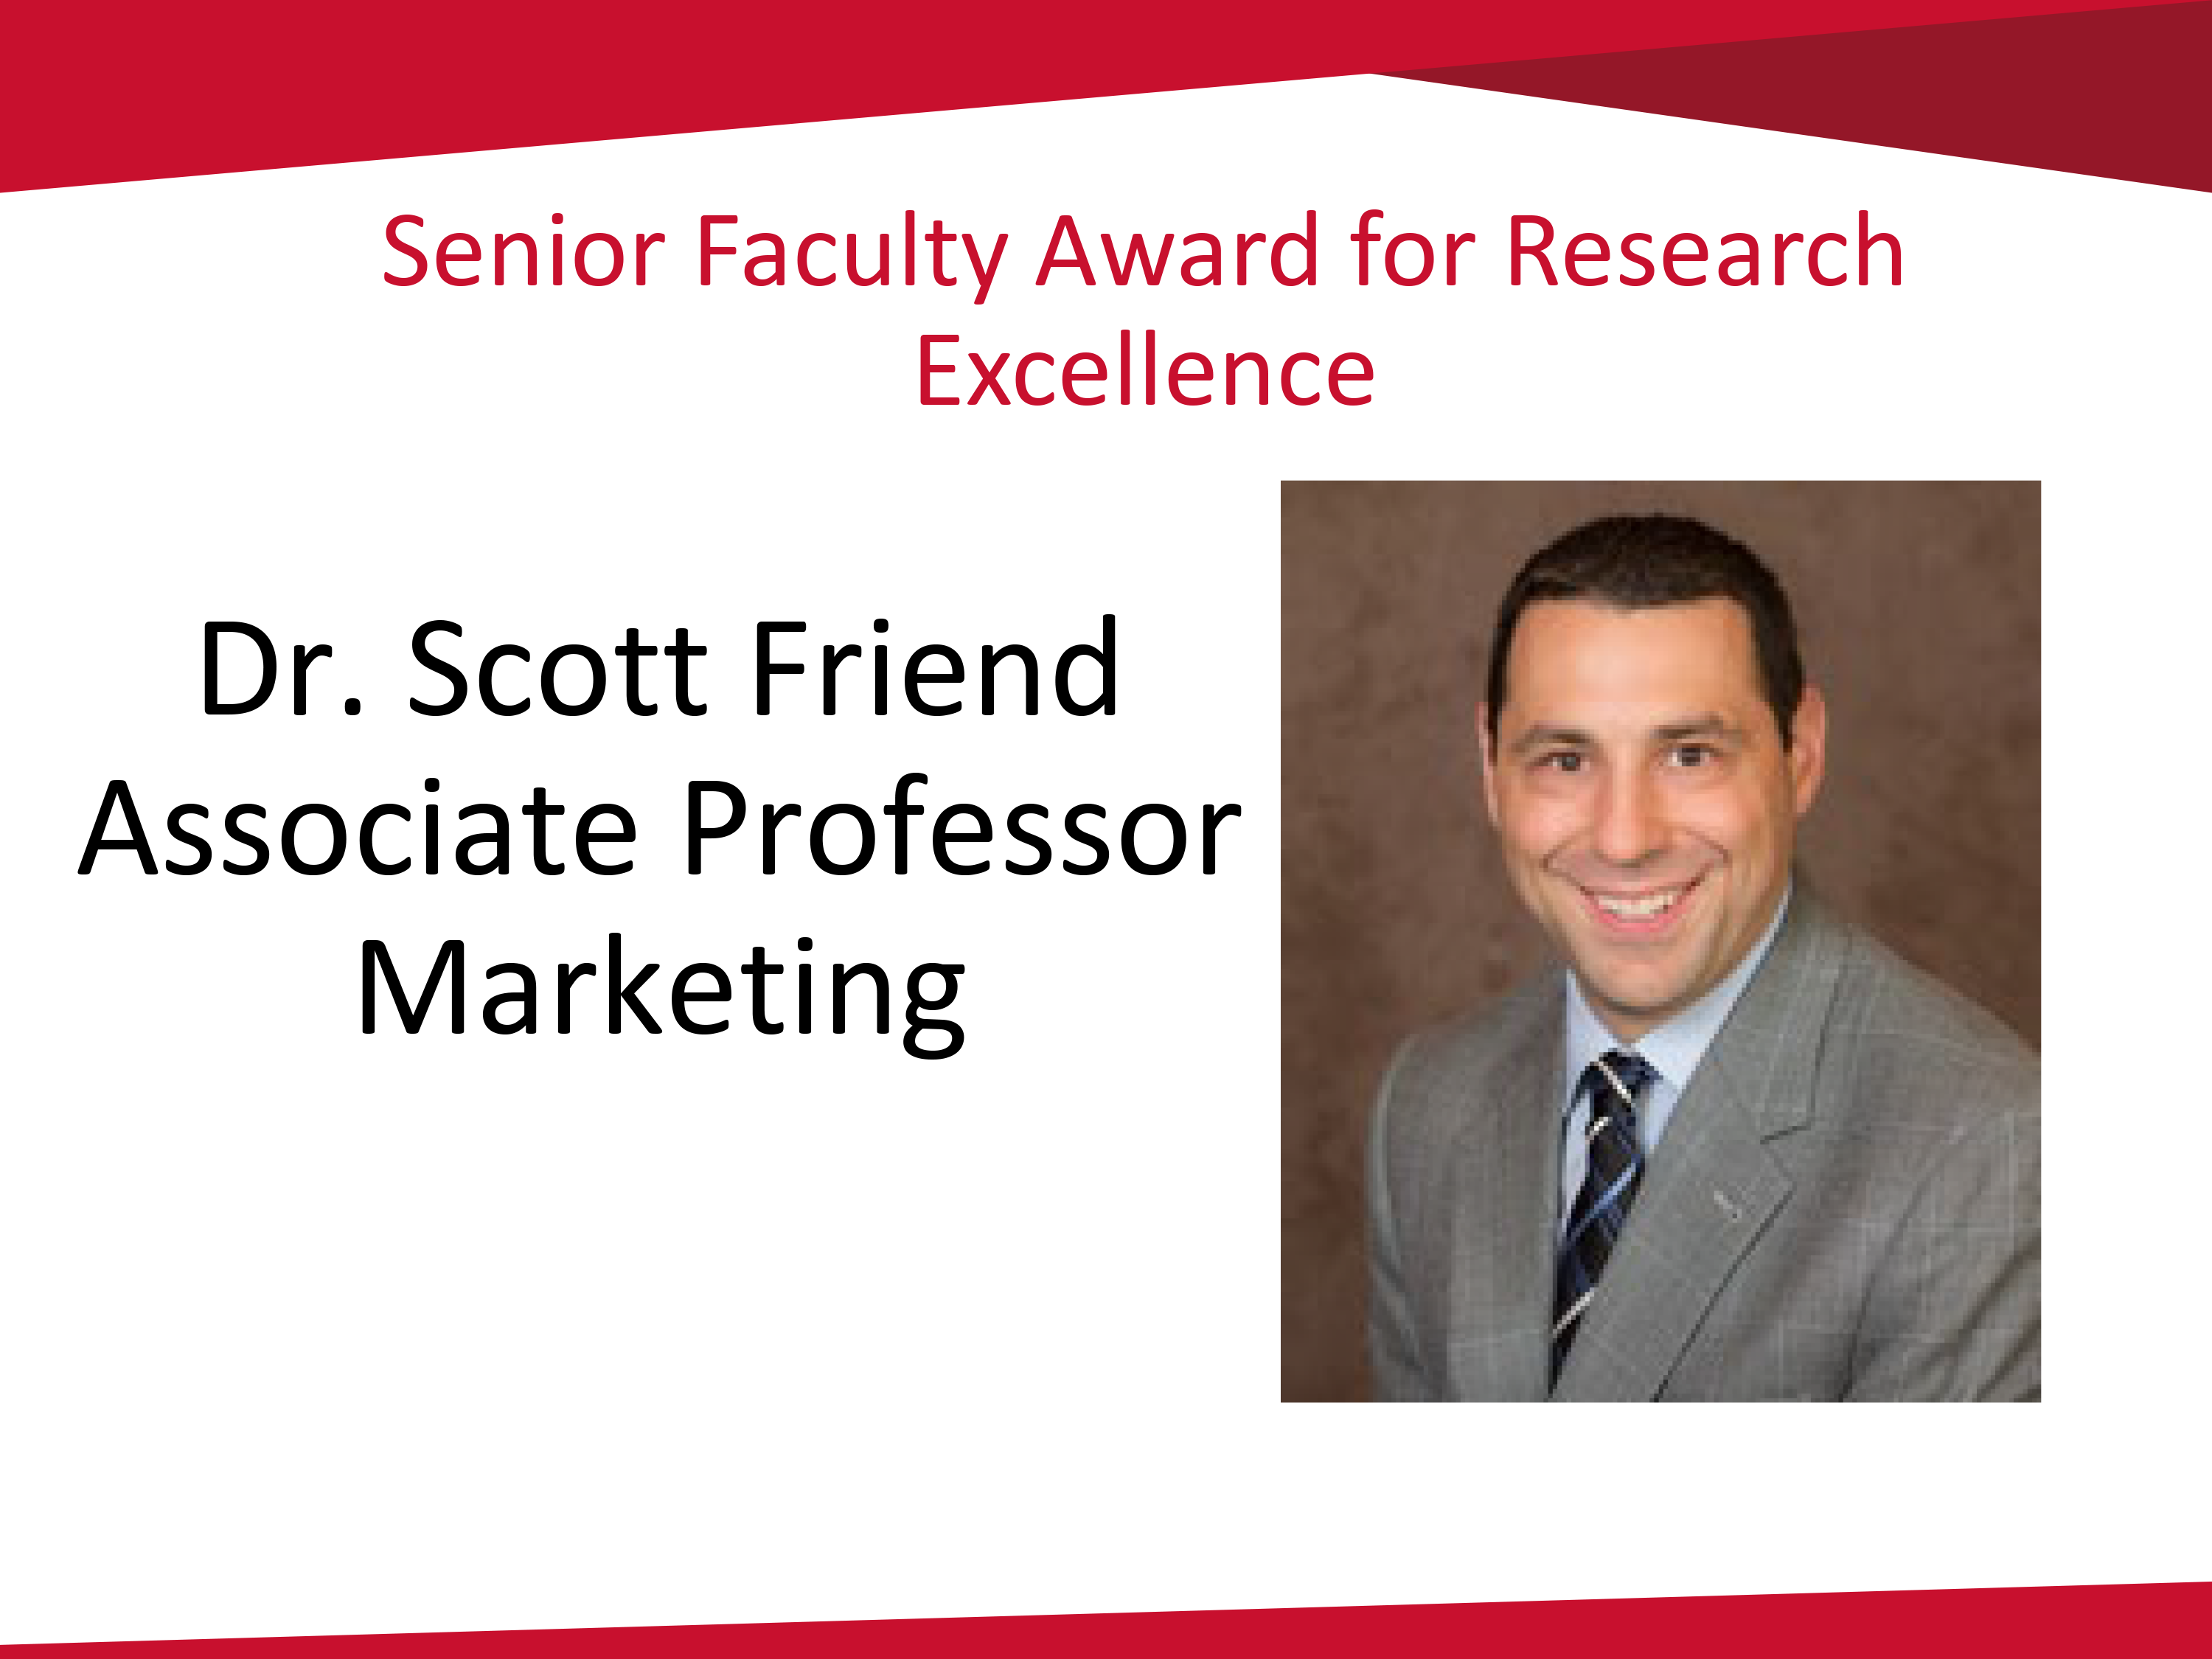 Scott Friend senior faculty winner